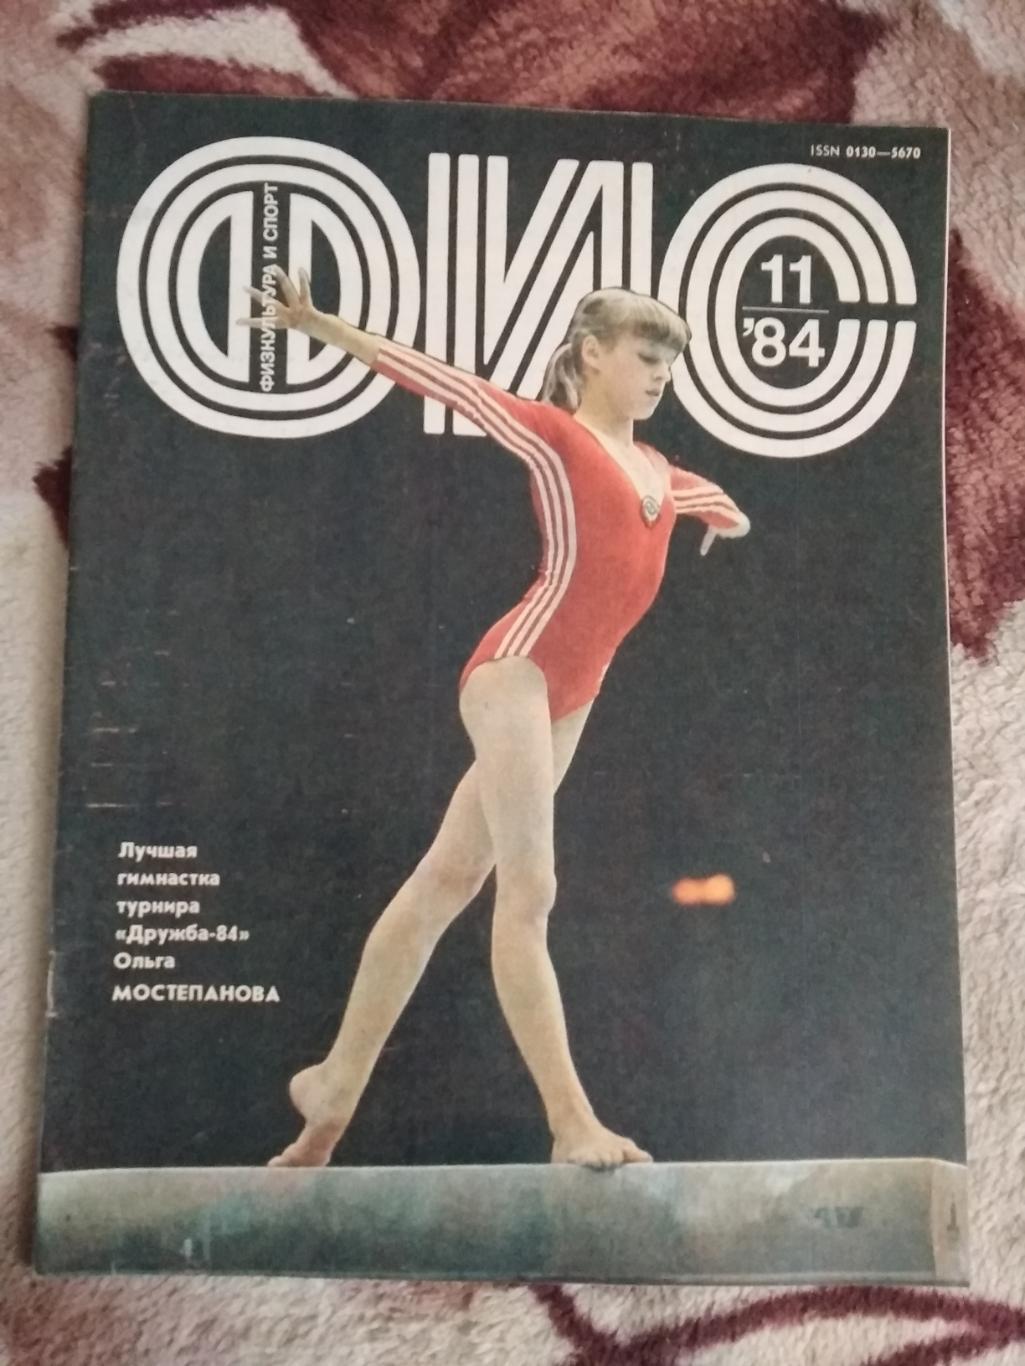 Журнал.Физкультура и спорт № 11 1984 г. (ФиС).